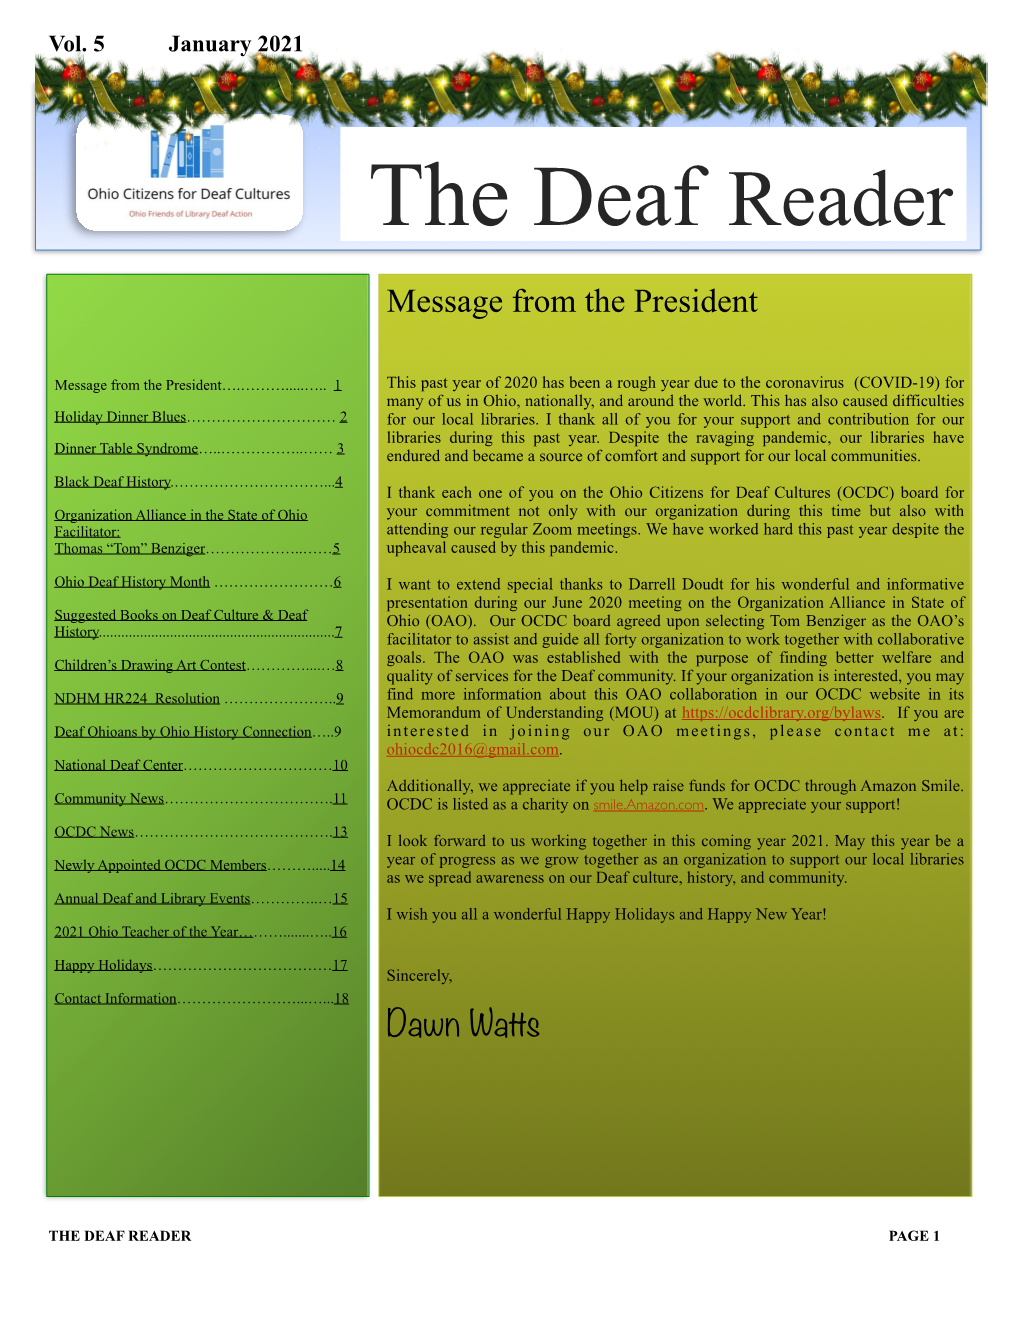 The Deaf Reader